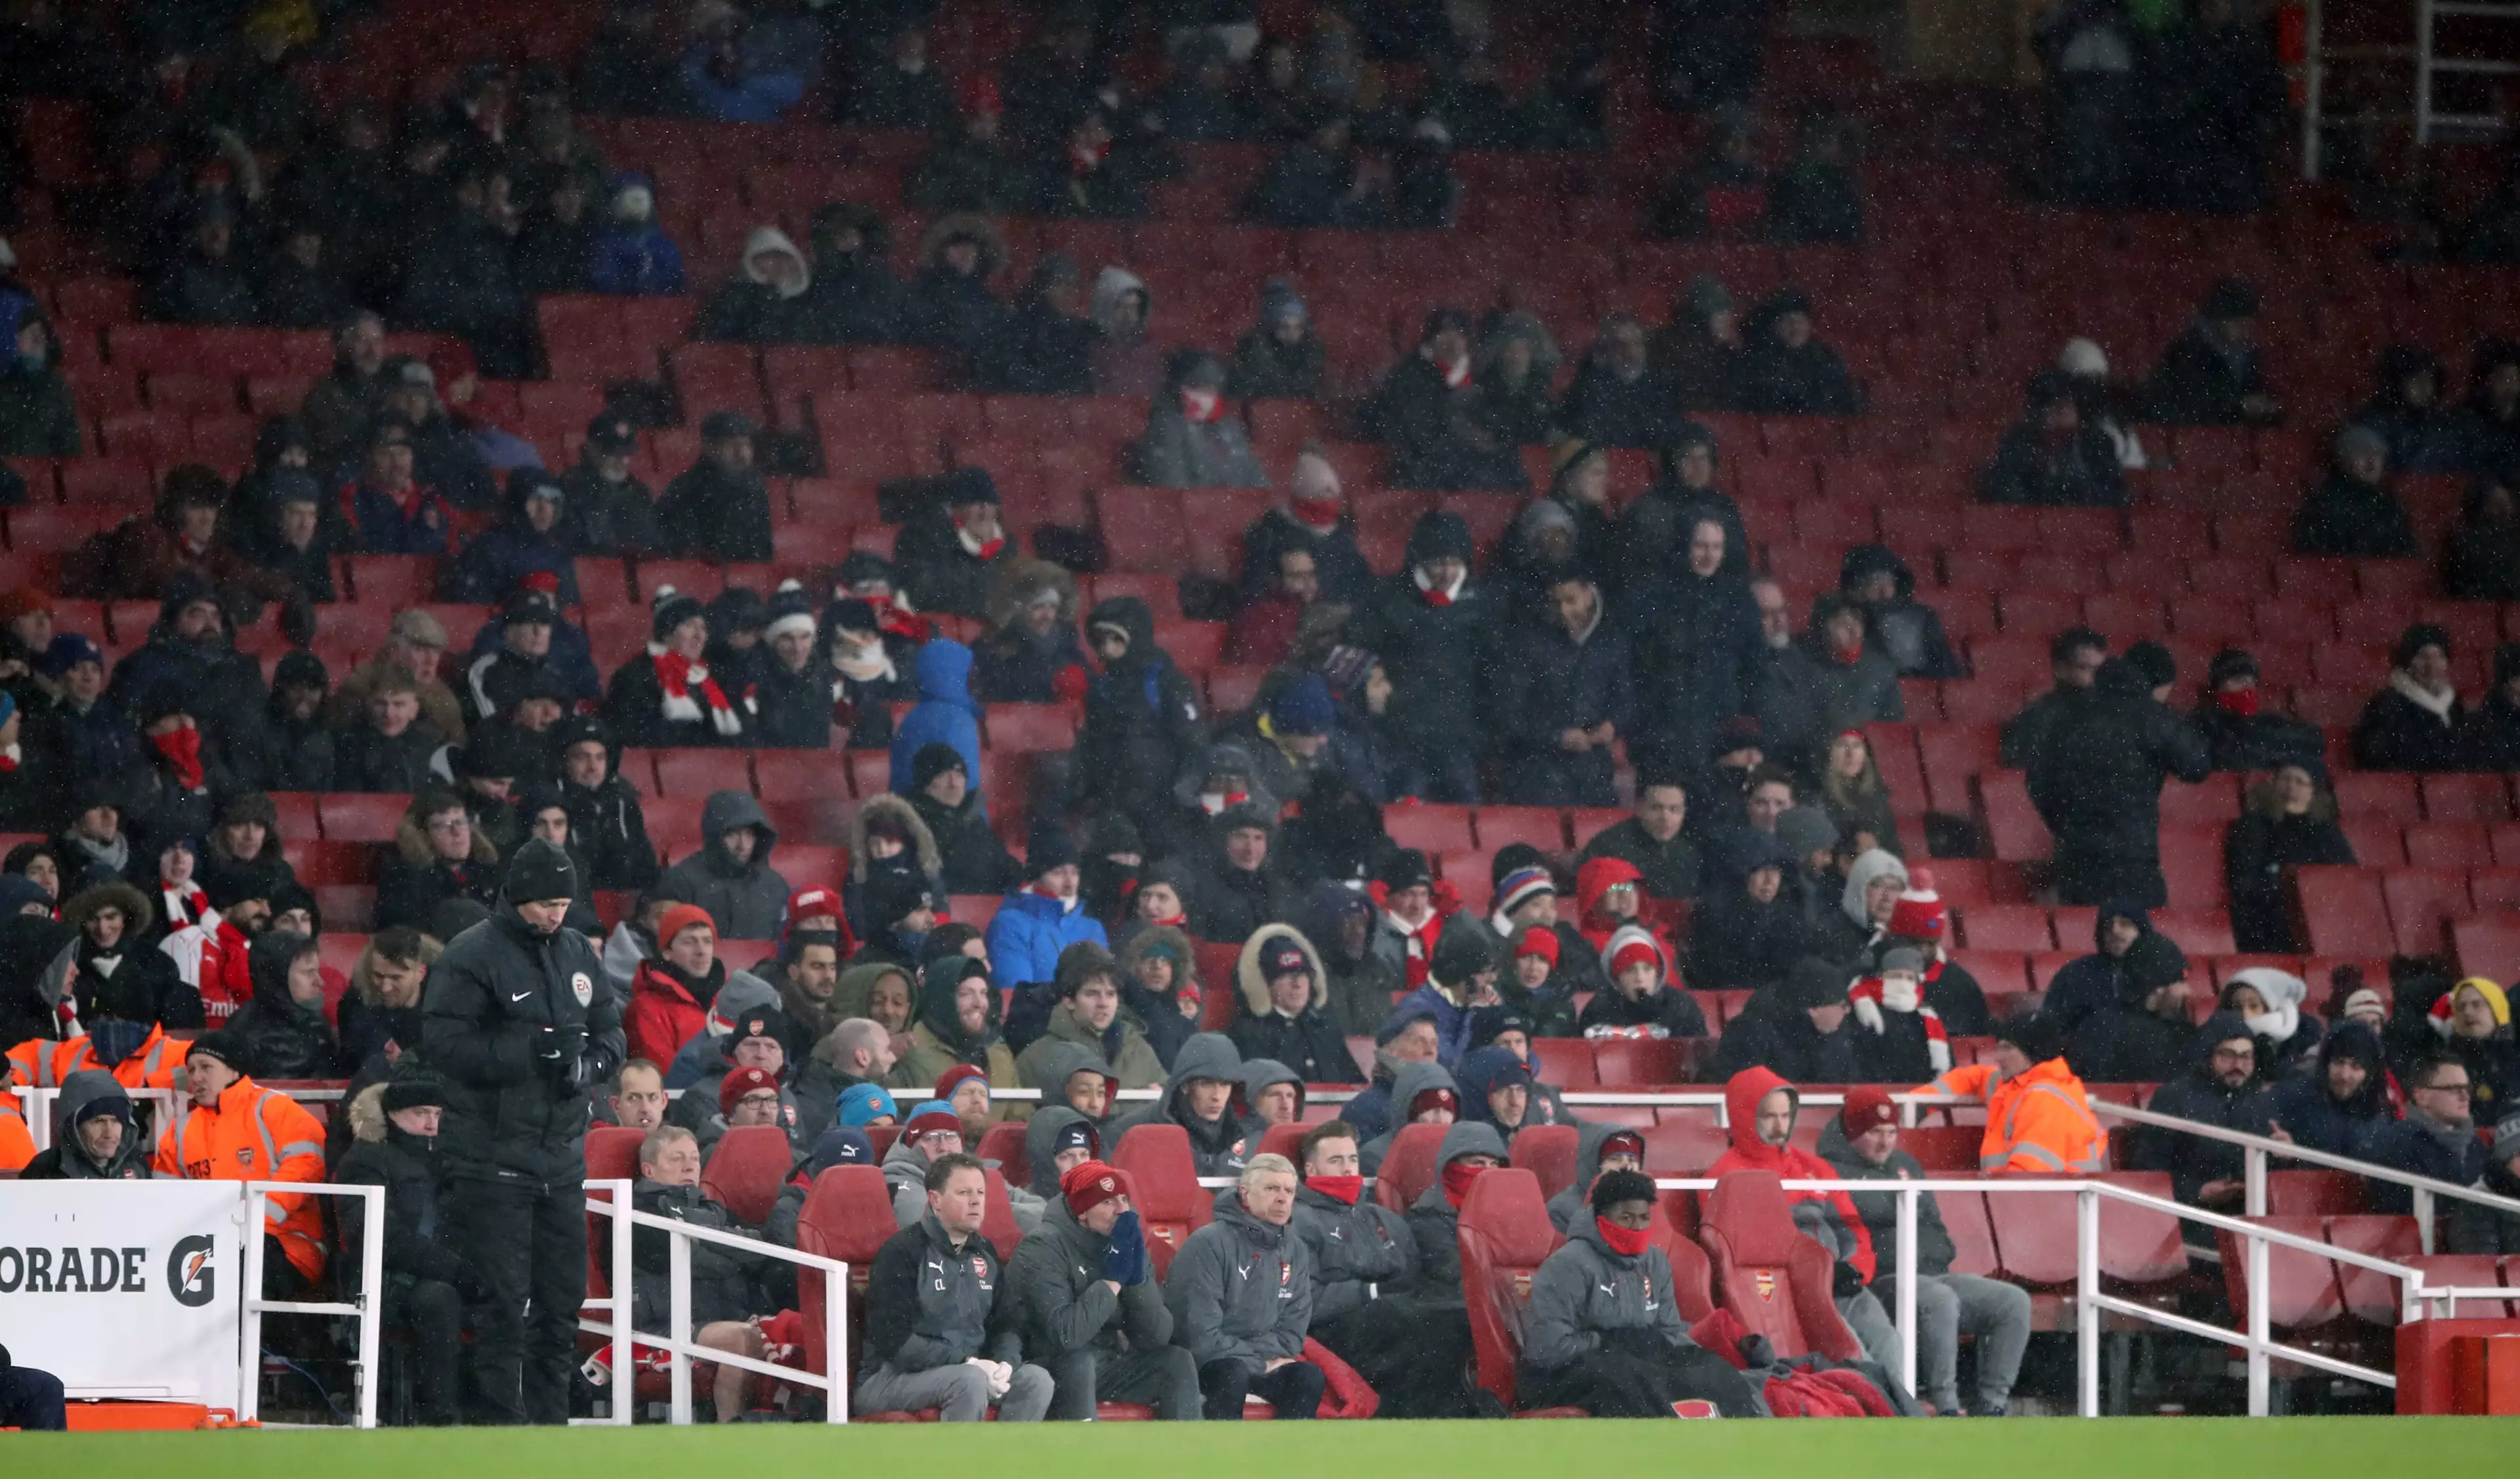 Arsenal fans watch on. Image: PA